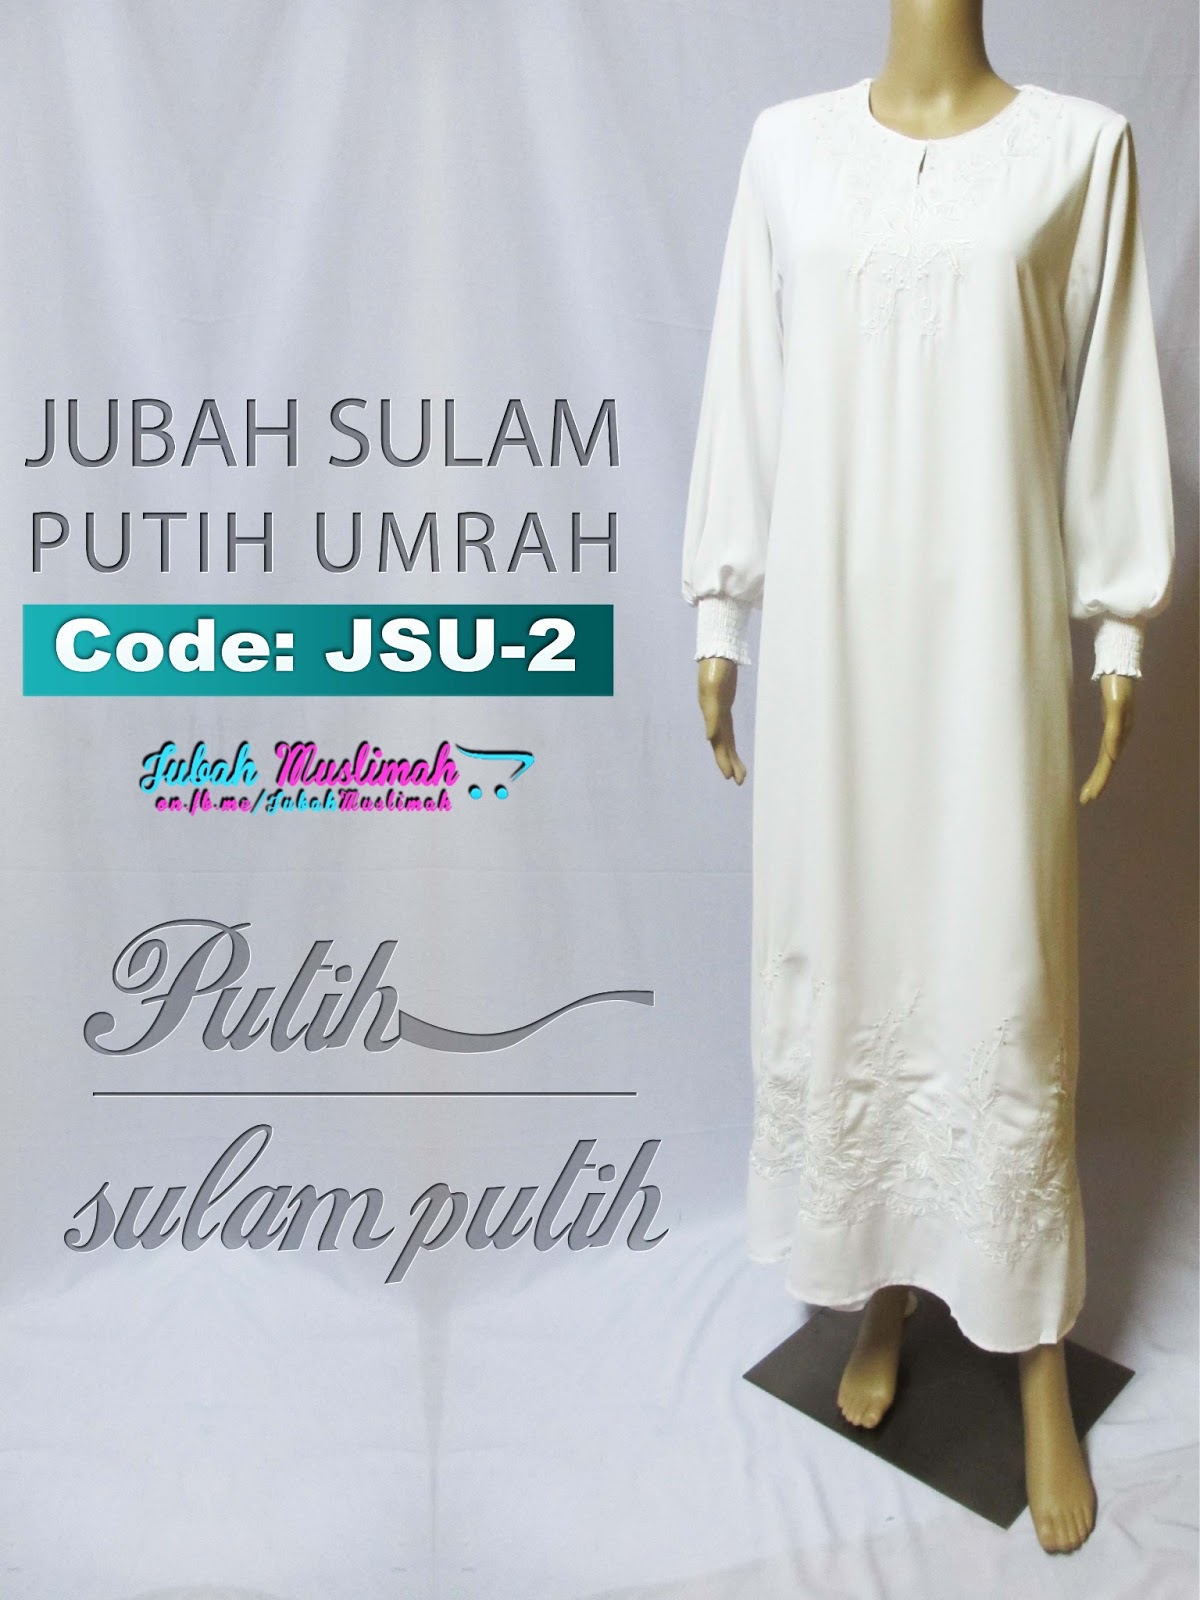  Jubah  Muslimah Official JSU 2 Jubah Umrah  Sulam Putih 2